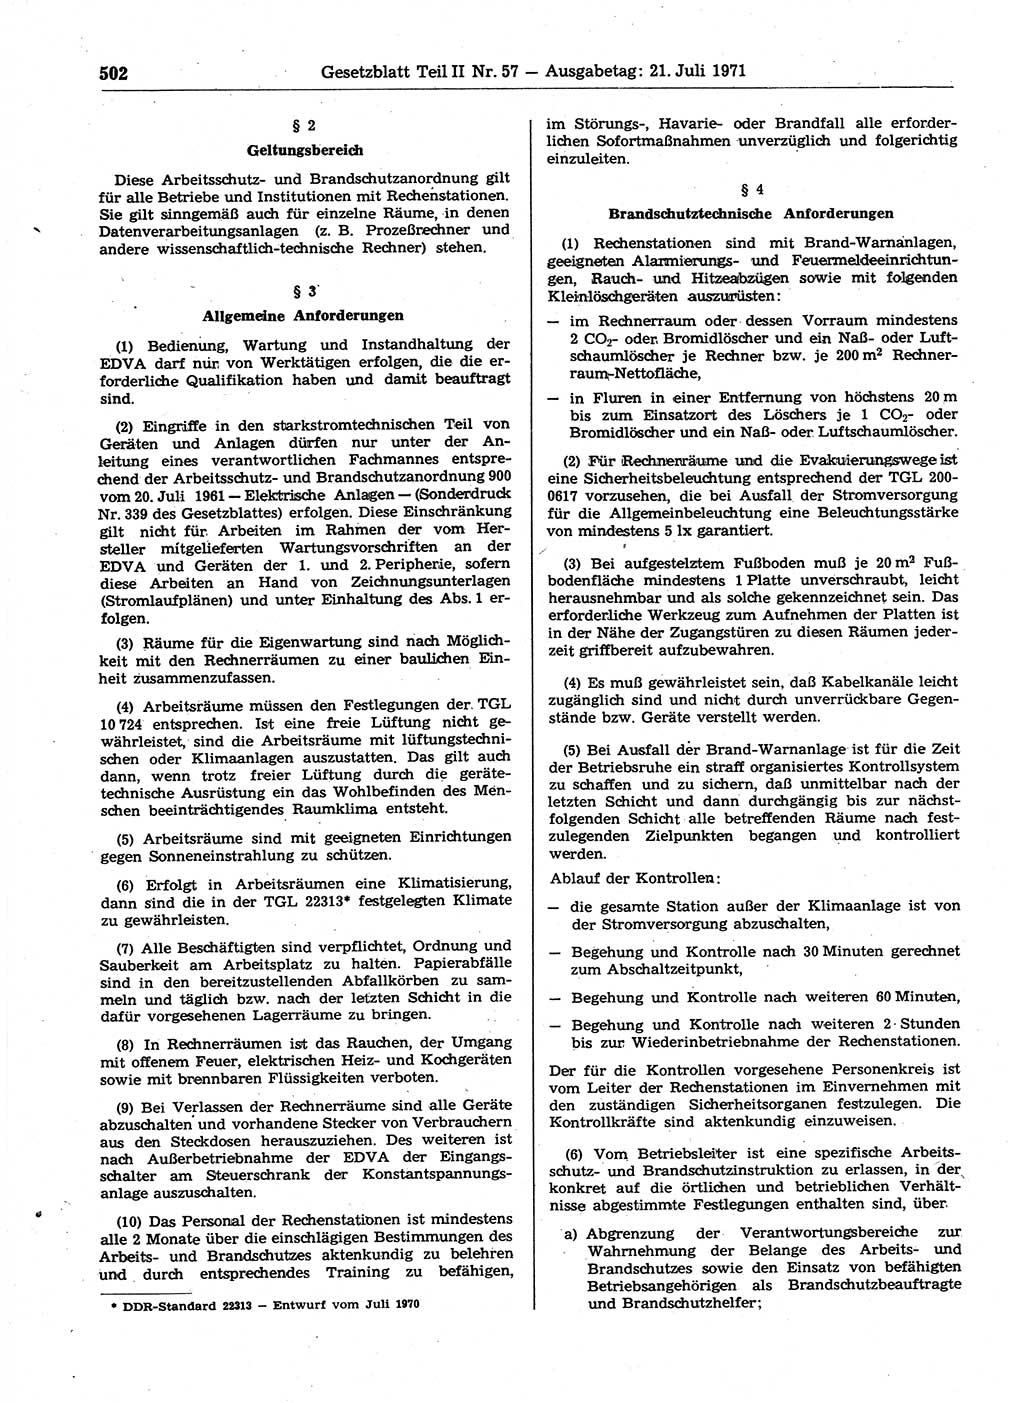 Gesetzblatt (GBl.) der Deutschen Demokratischen Republik (DDR) Teil ⅠⅠ 1971, Seite 502 (GBl. DDR ⅠⅠ 1971, S. 502)